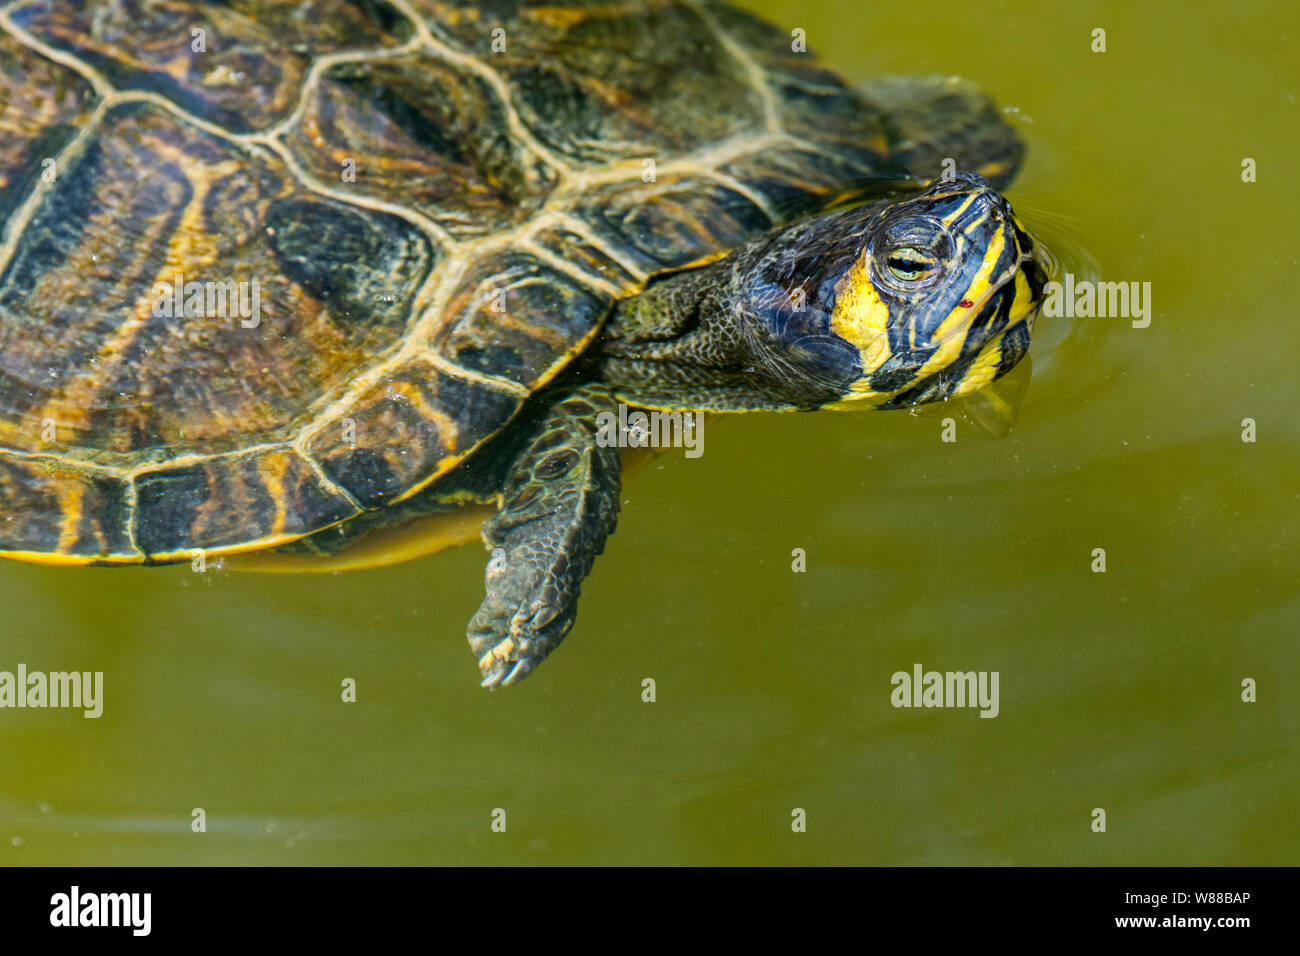 Amarillo-curva deslizante (Trachemys scripta scripta) nadando en un estanque de tortugas de tierra y agua, nativo del sureste de Estados Unidos Foto de stock